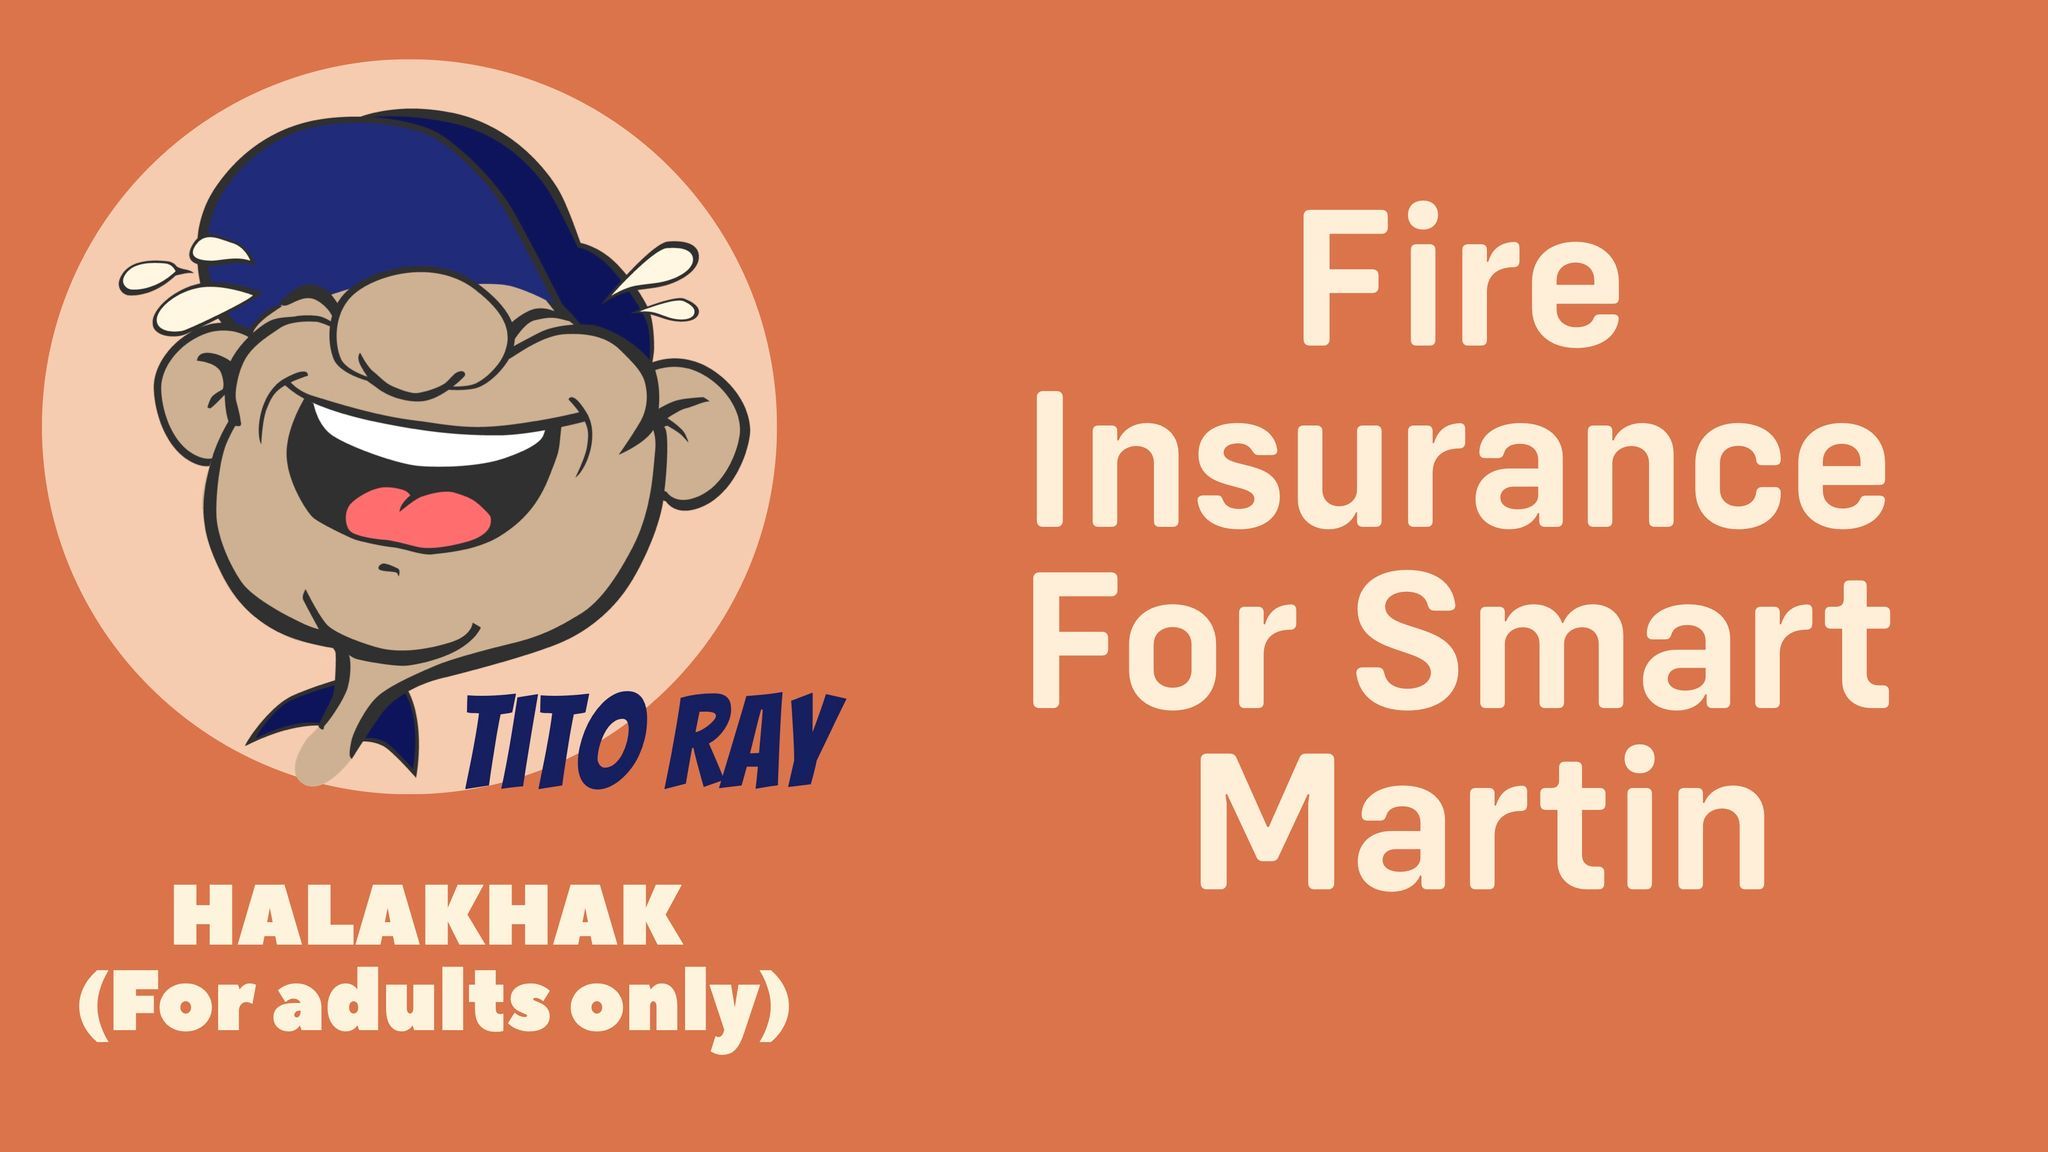 Fire Insurance For Smart Martin